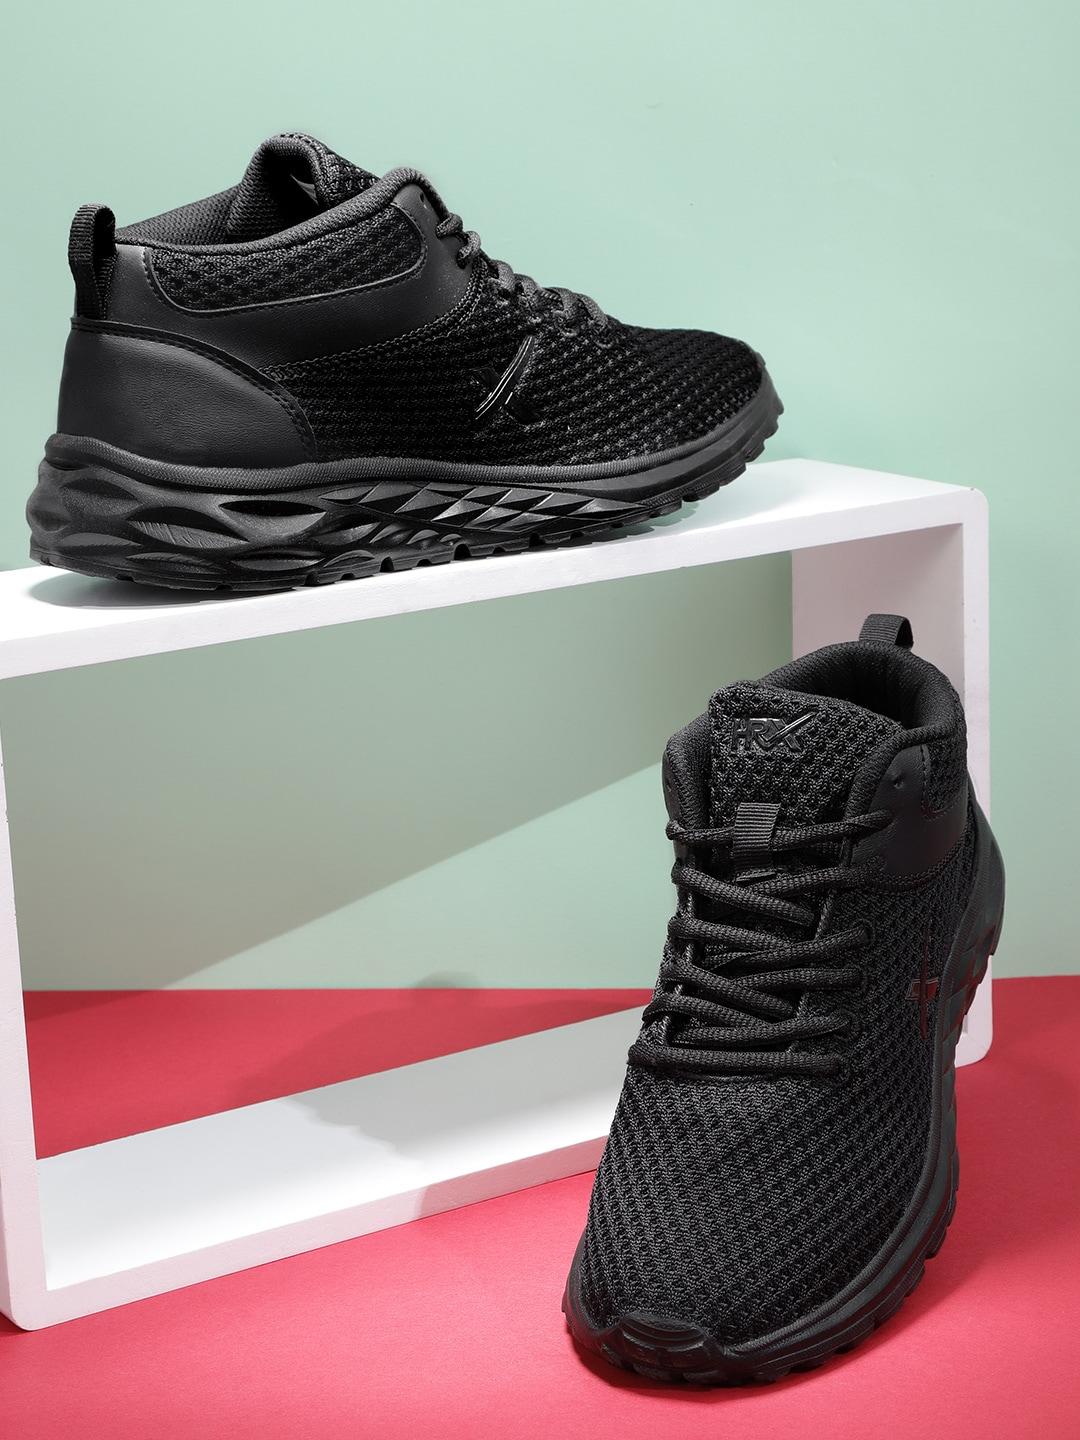 hrx-by-hrithik-roshan-men-black-running-shoes